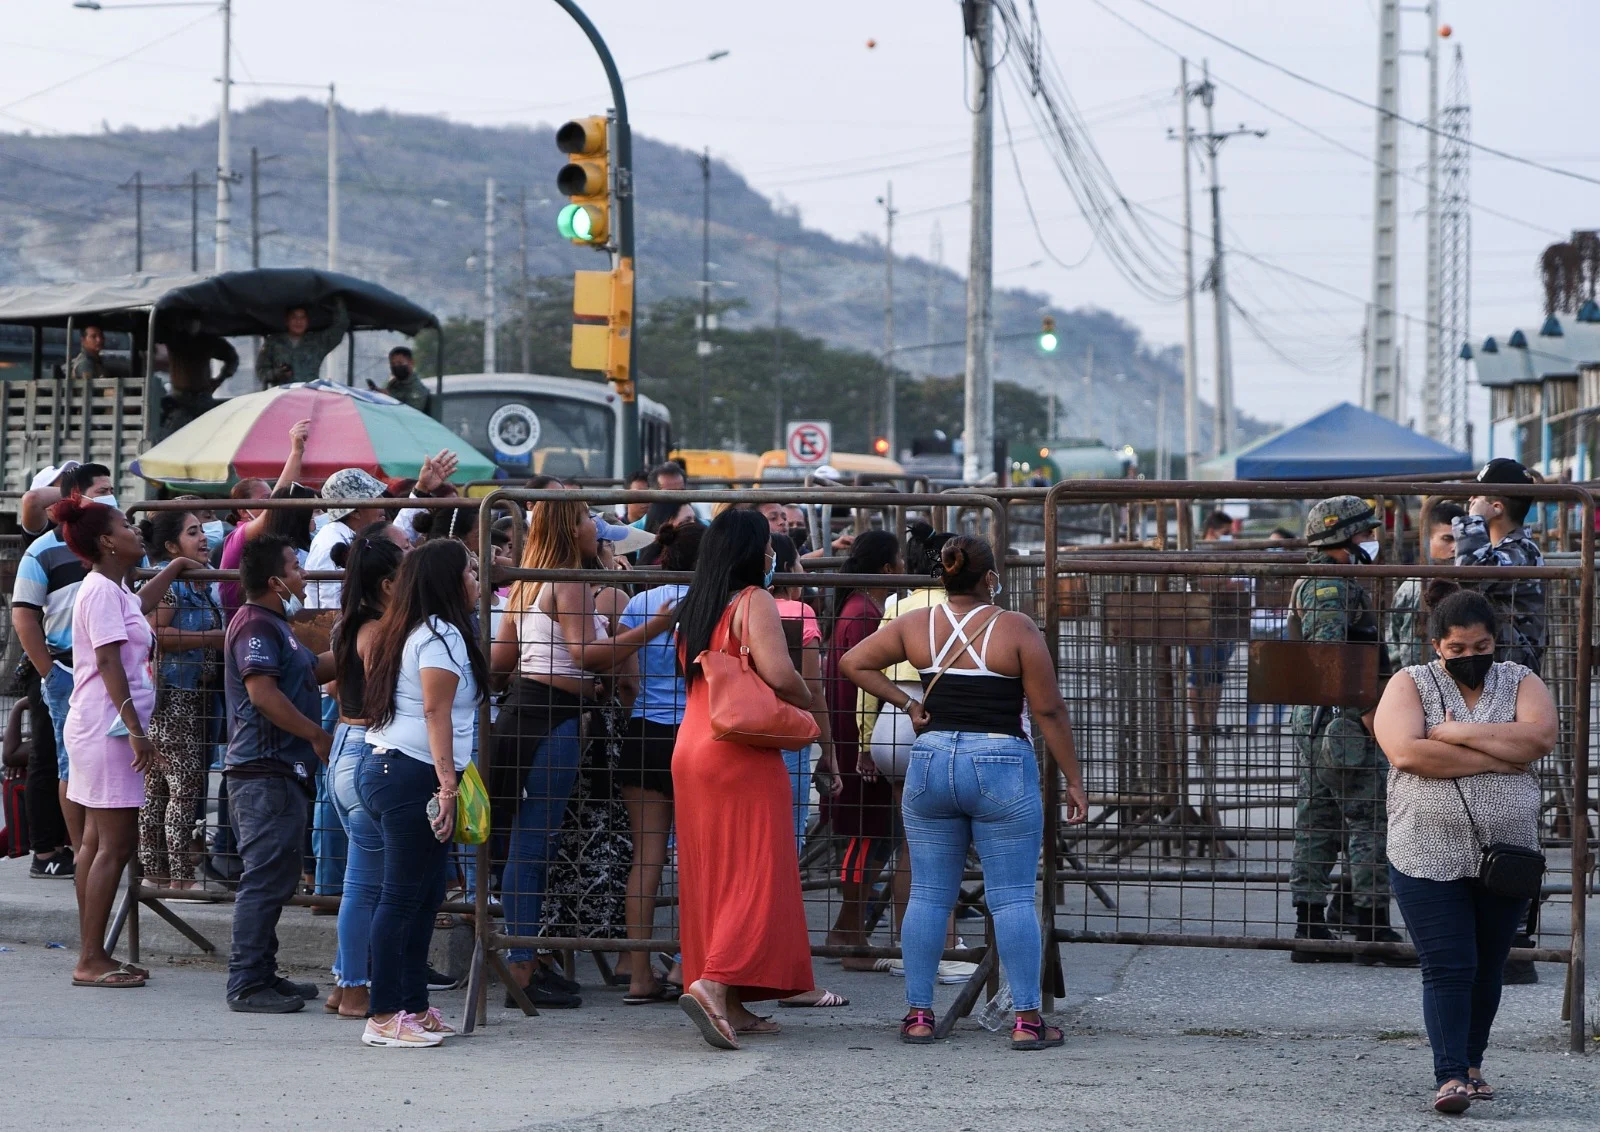 משפחות האסירים מחכות לבשורות מחוץ לשערי הכלא